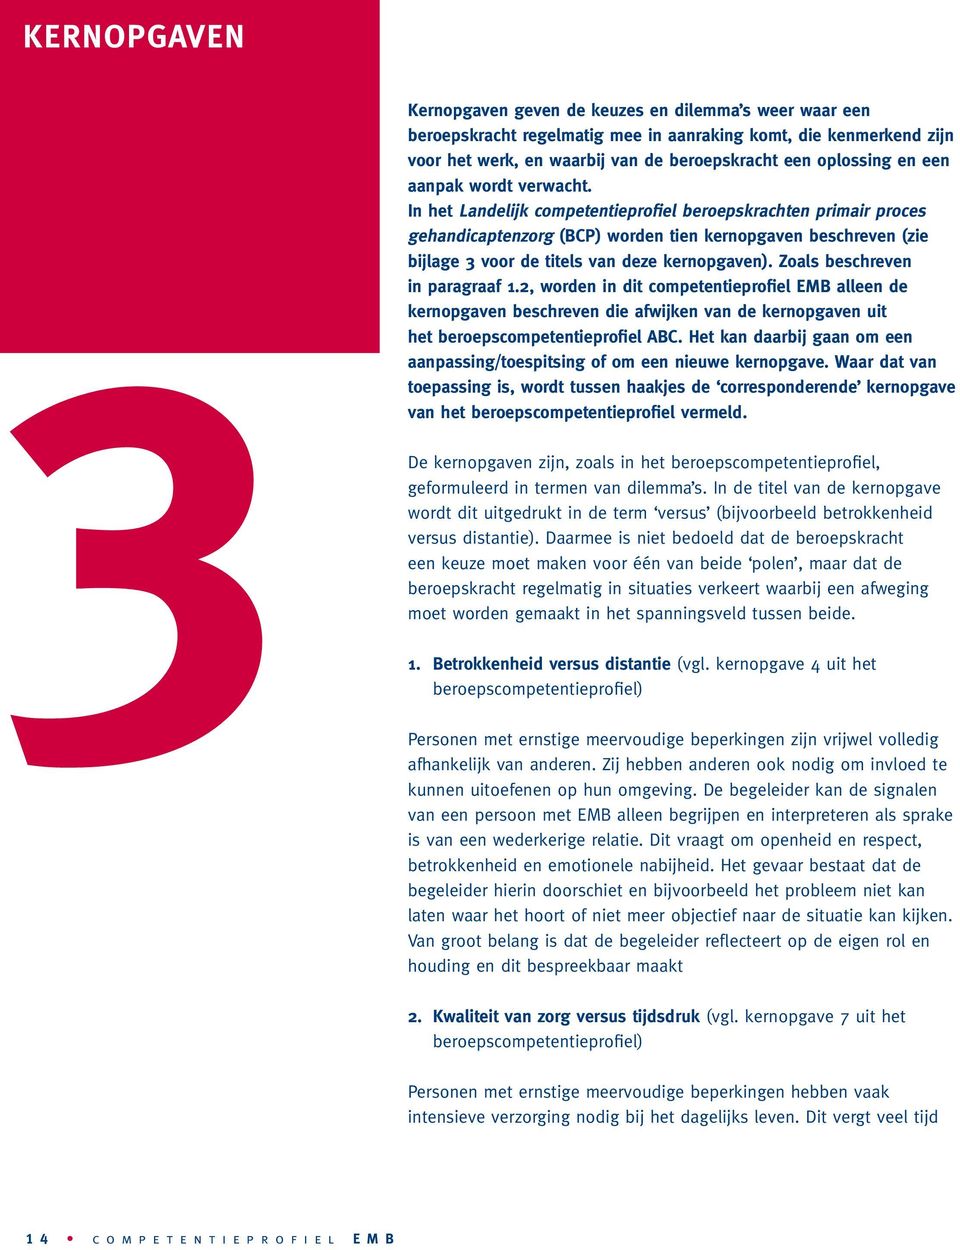 In het Landelijk competentieprofiel beroepskrachten primair proces gehandicaptenzorg (BCP) worden tien kernopgaven beschreven (zie bijlage 3 voor de titels van deze kernopgaven).